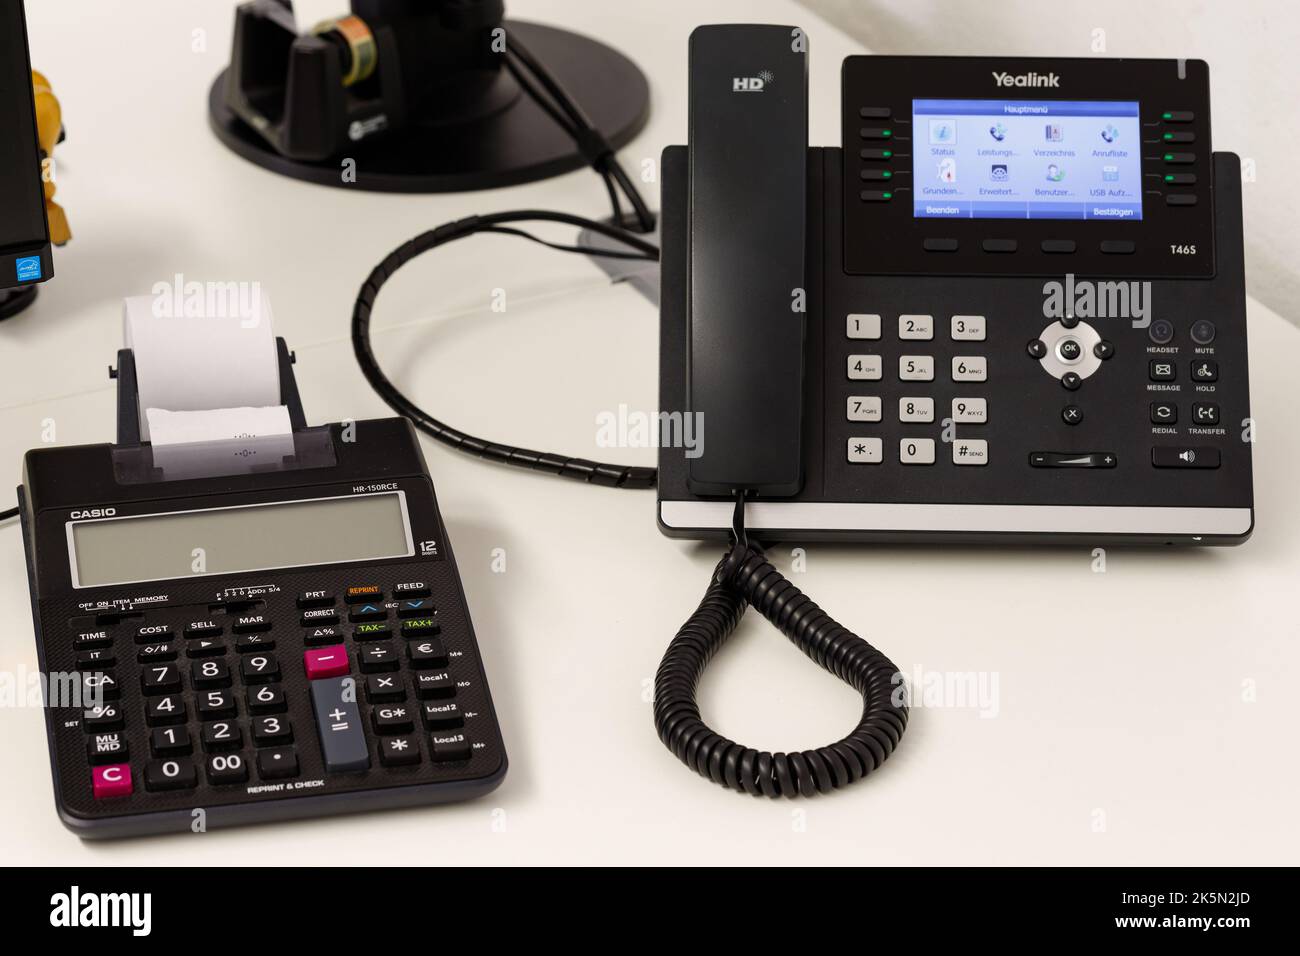 Treuchtlingen, Alemania, 09 Oktober 2022: Escena de oficina con el teléfono  Yealink T46S es un teléfono IP de negocios que ahora se utiliza ampliamente  en el mundo y un casio Fotografía de